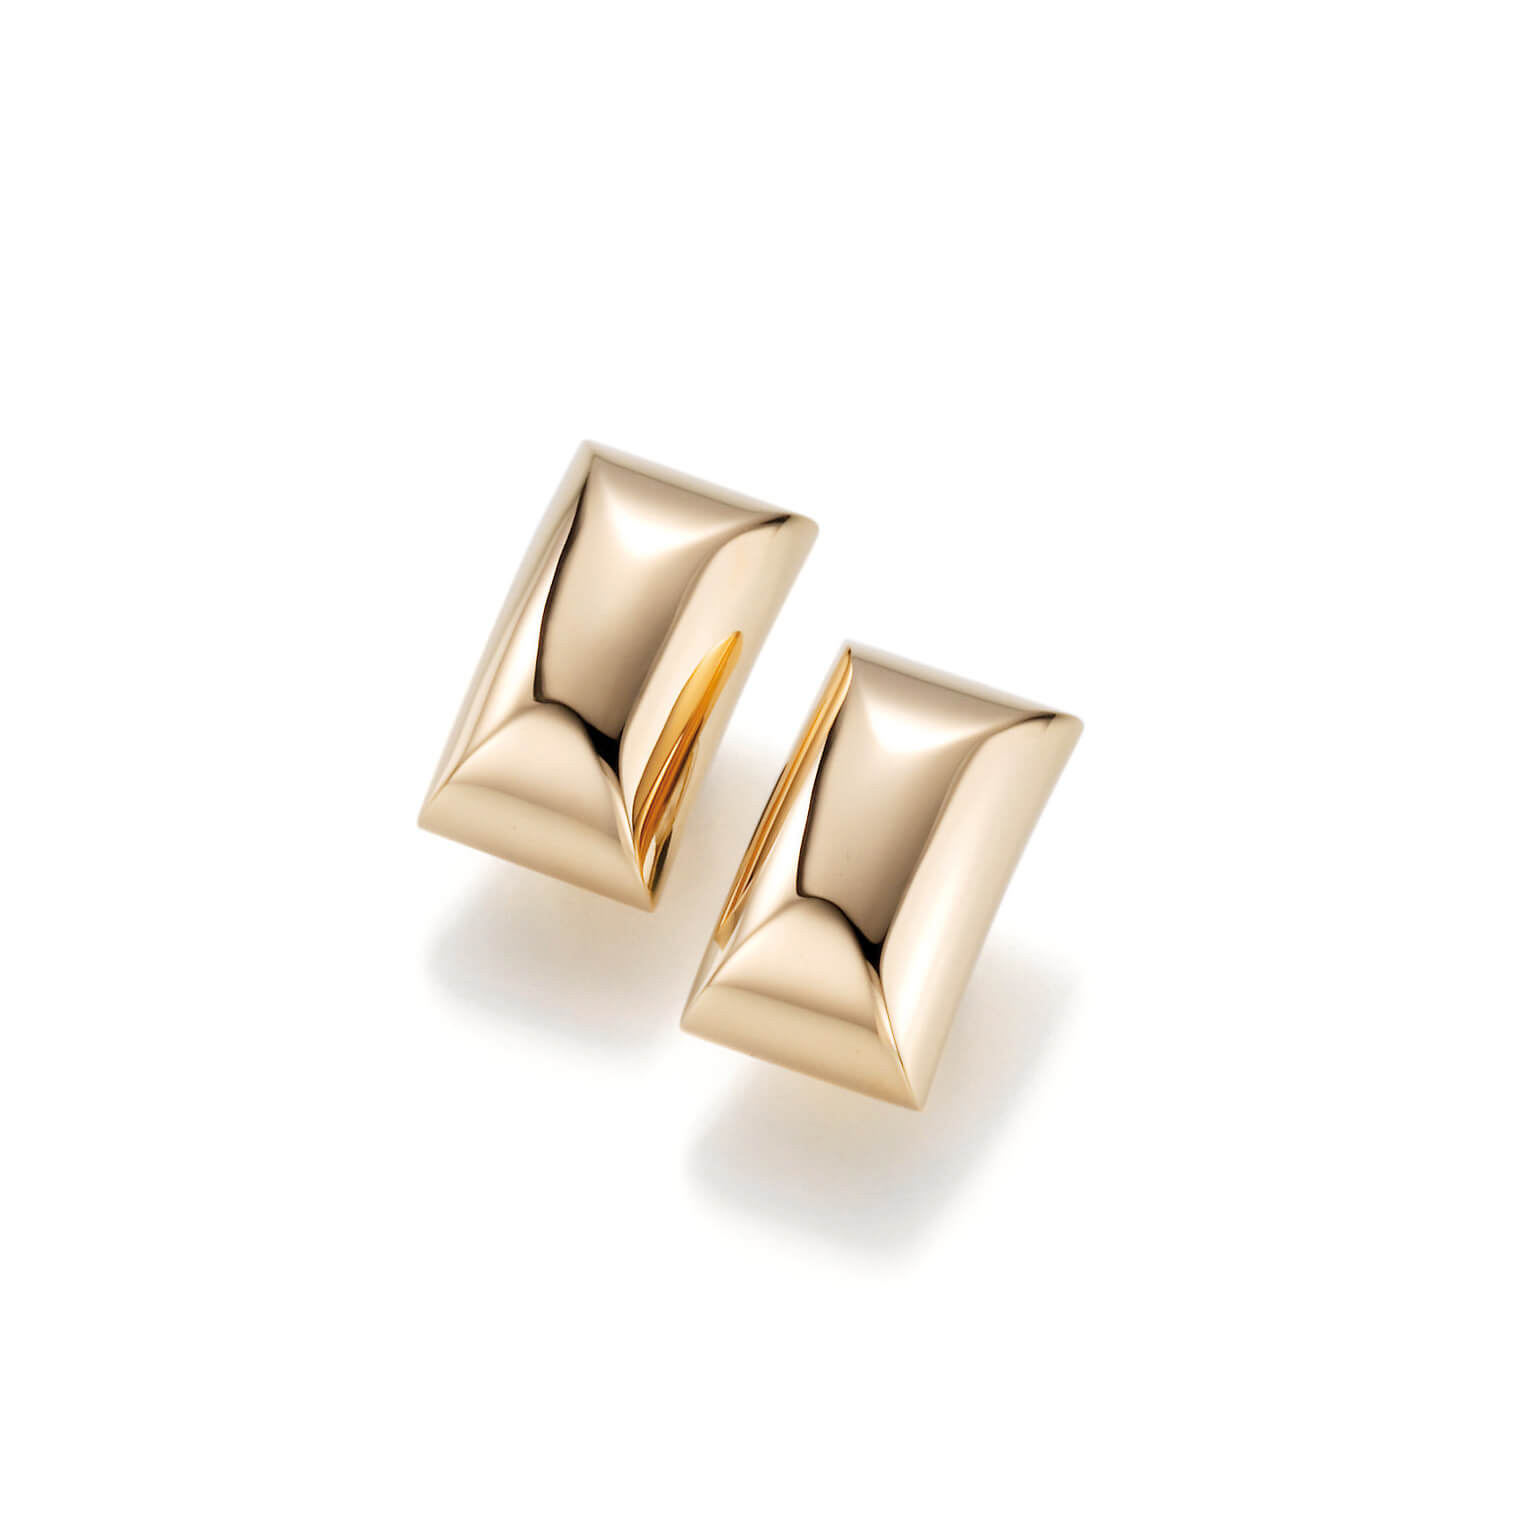 Commercio all'ingrosso Sei nel posto giusto per 925 silver OEM/ODM Jewelry custom gold plate orecchini